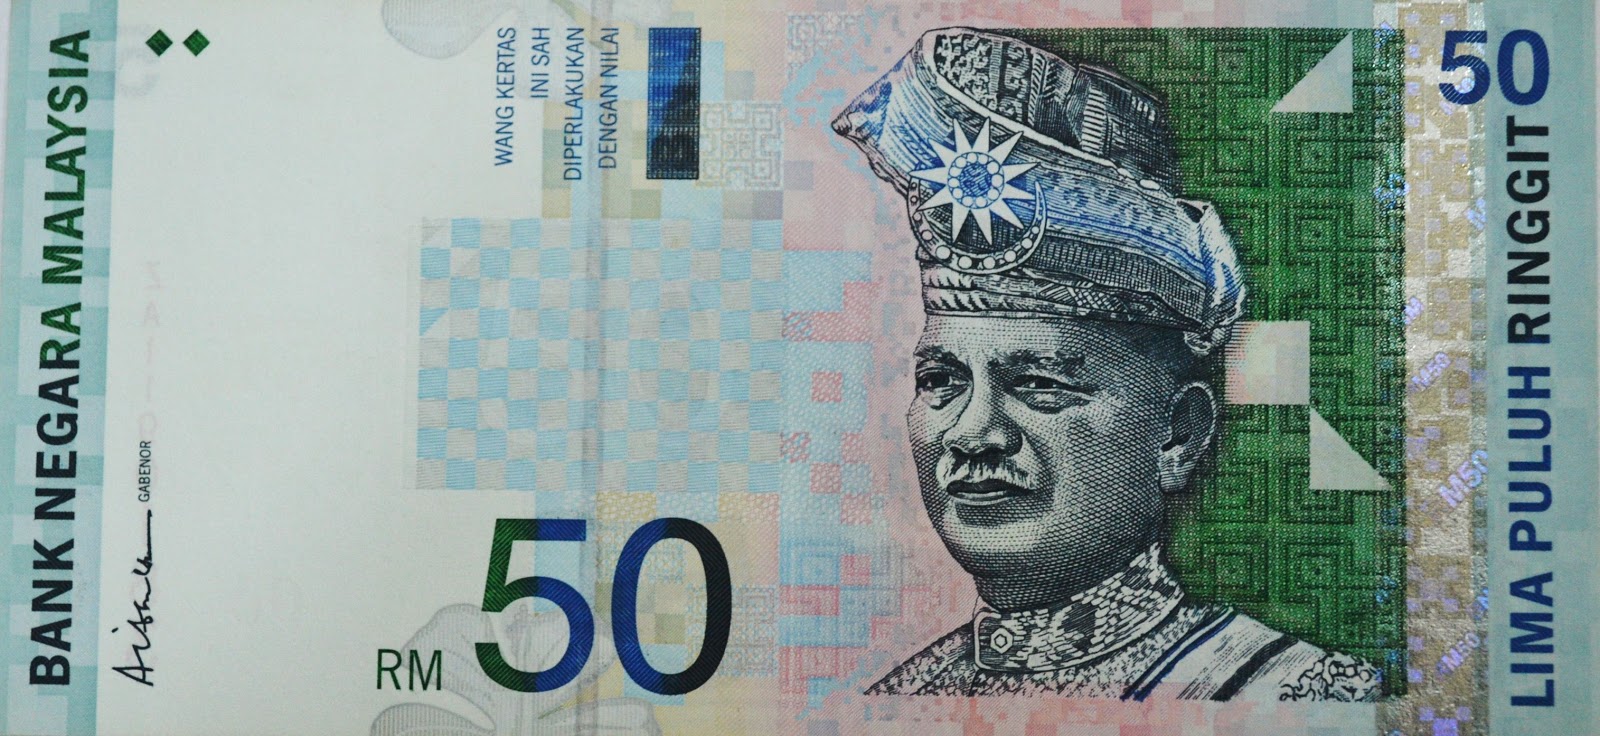 Galeri Sha Banknote WANG KERTAS TANDATANGAN TAN SRI ABUL 